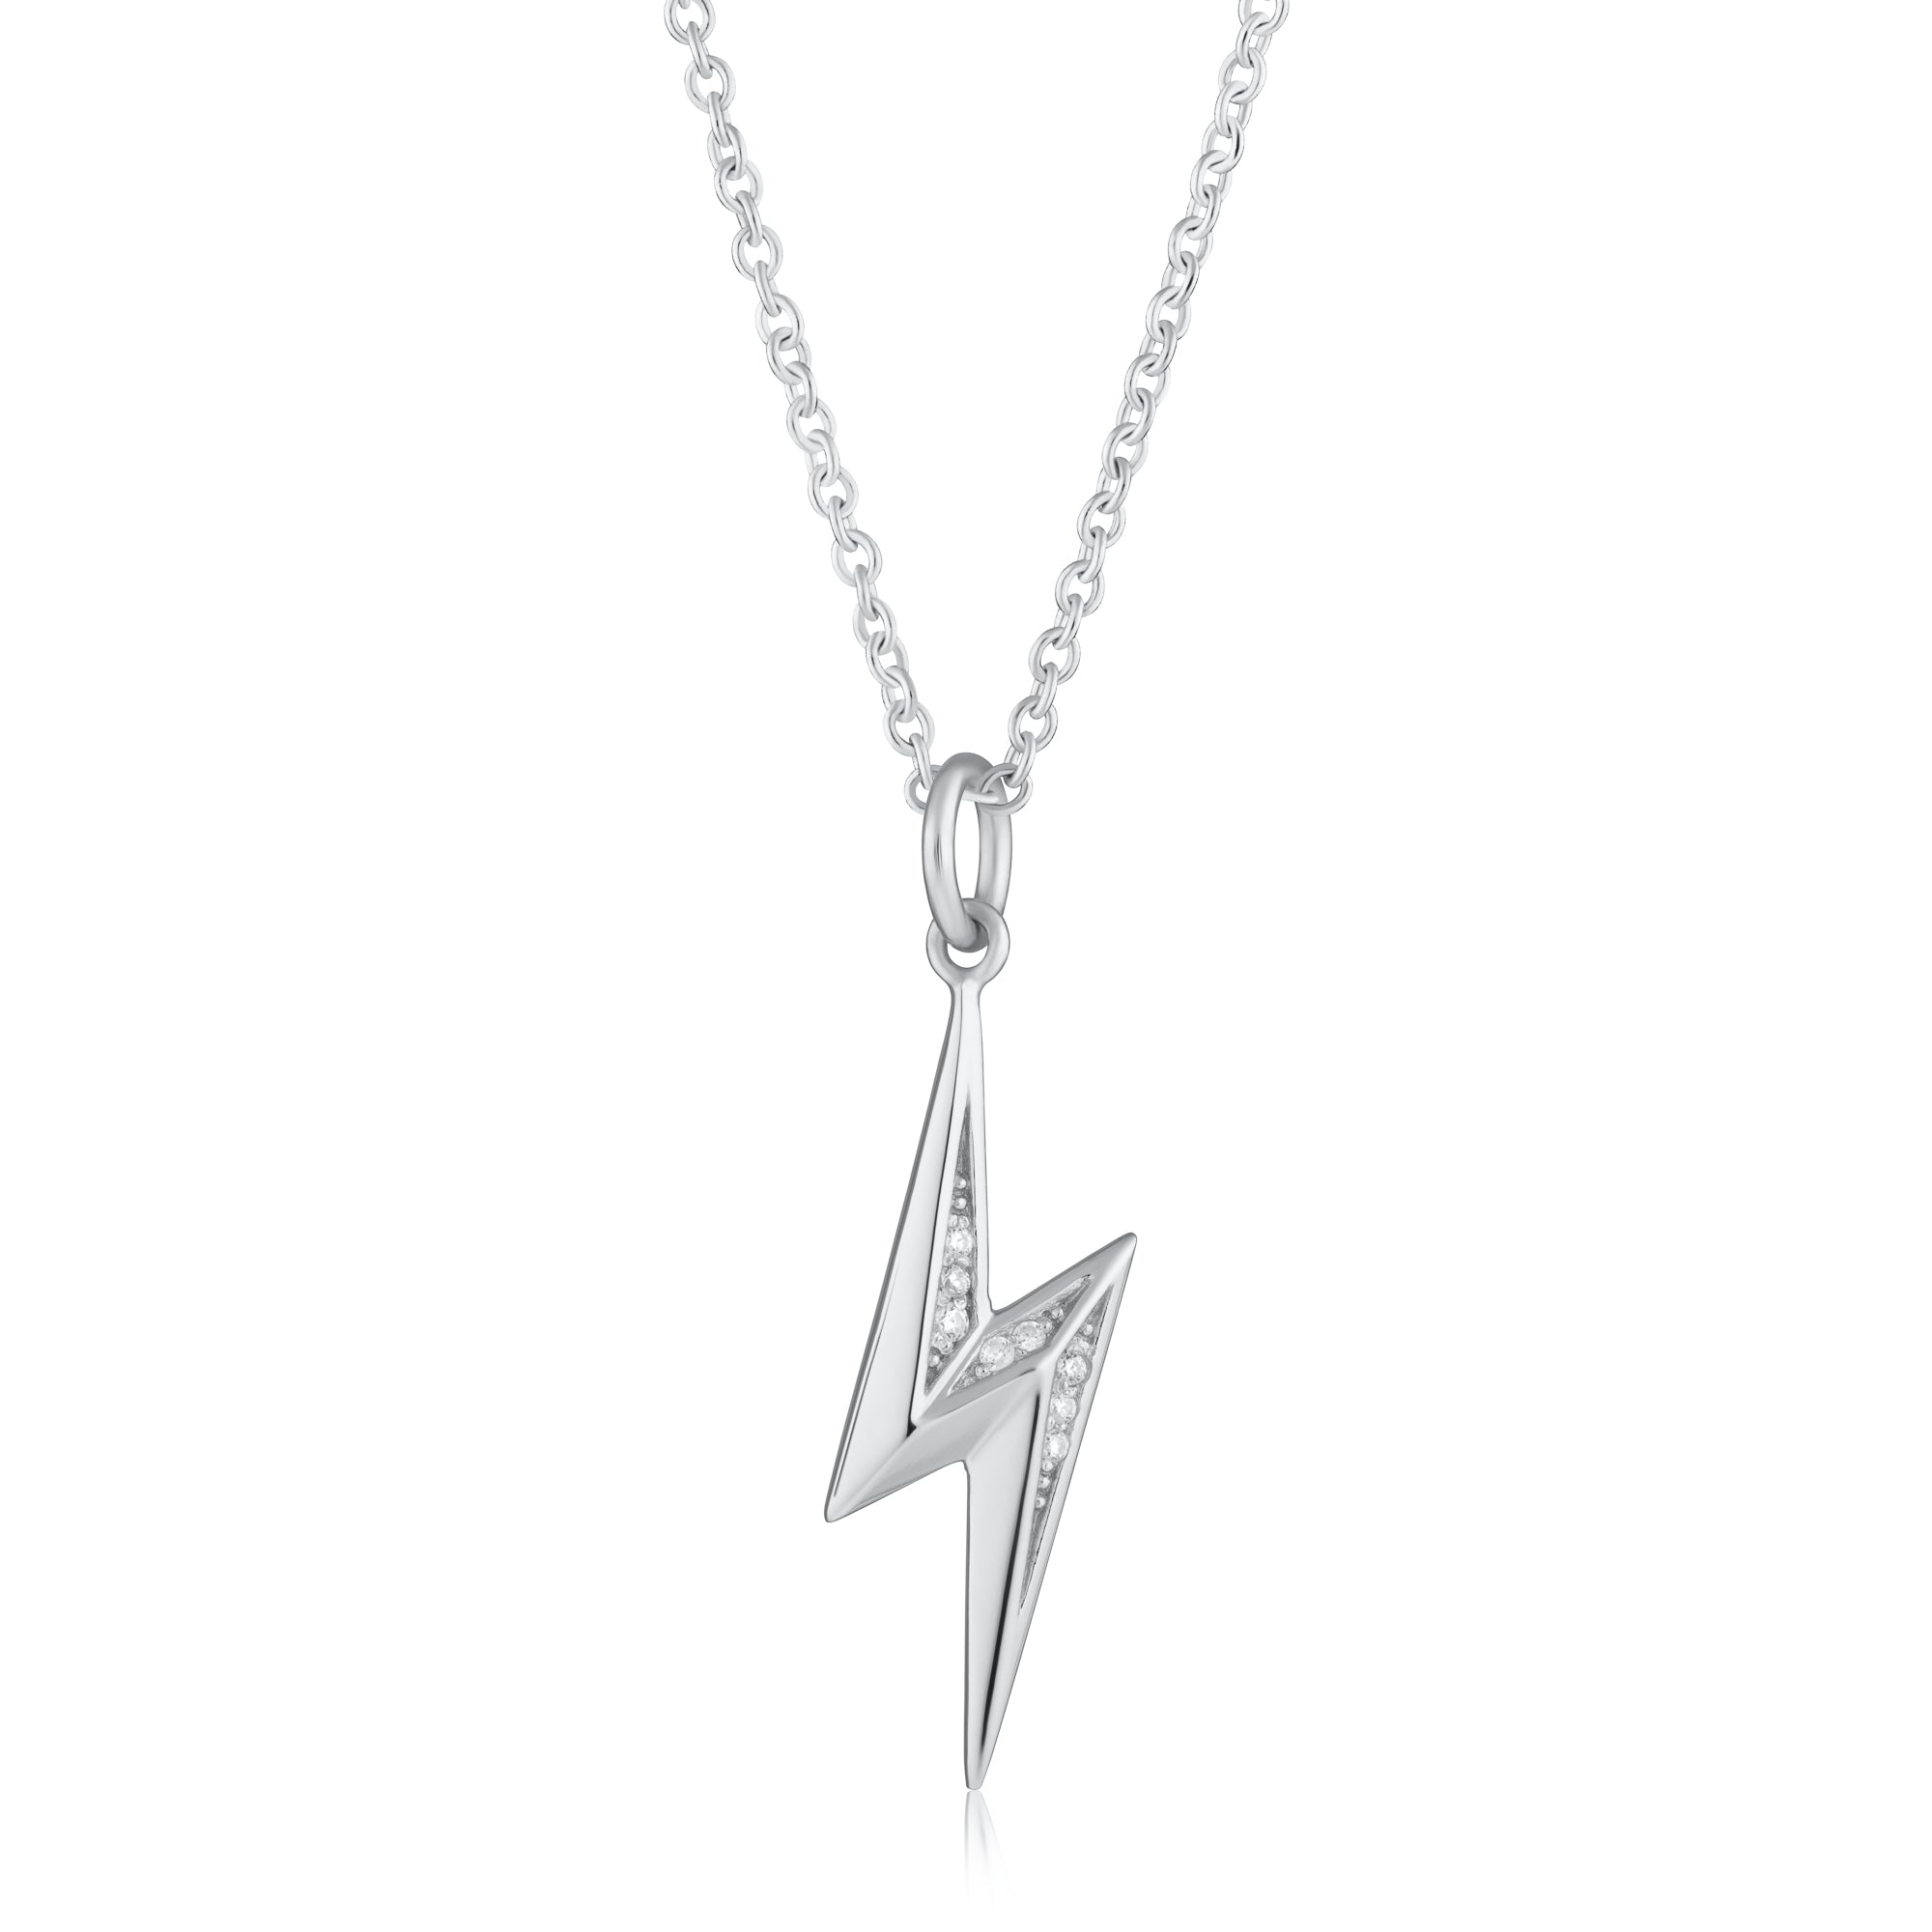 Sparkling Lightning Bolt Necklace with Slider Clasp